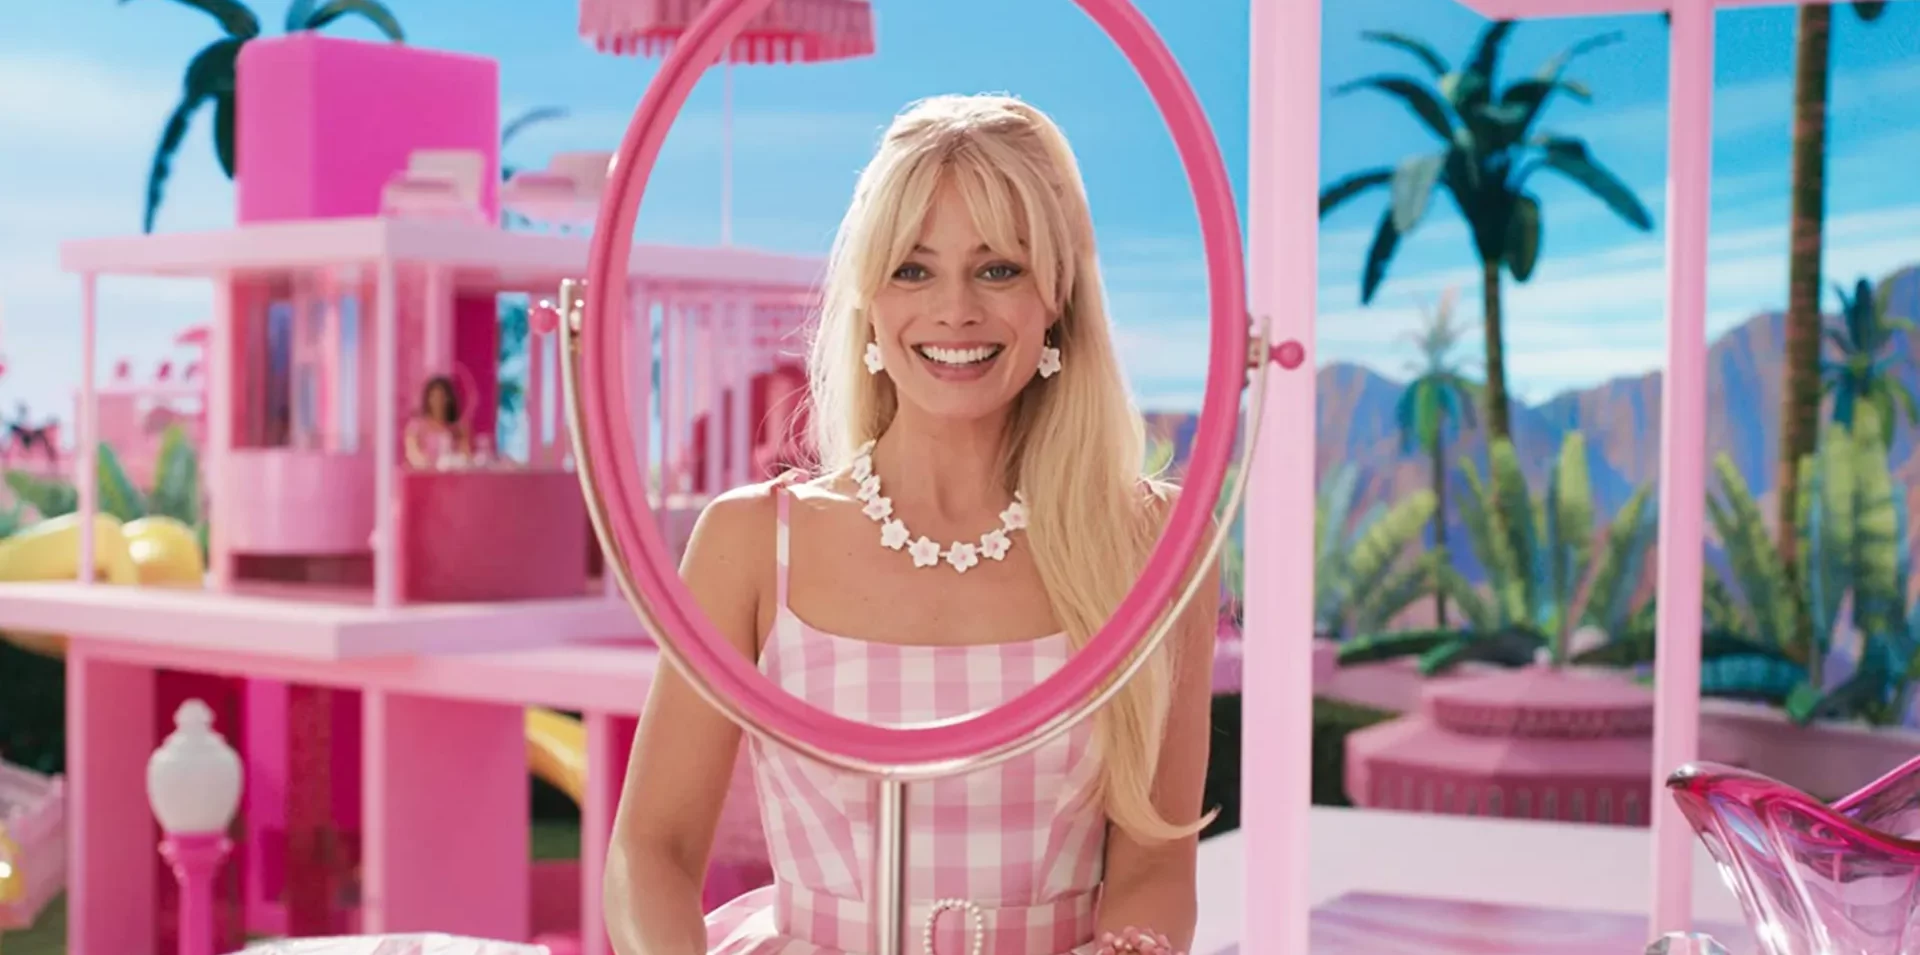 Barbie – Quando o feminismo for legalizado, filmes como esse serão comuns